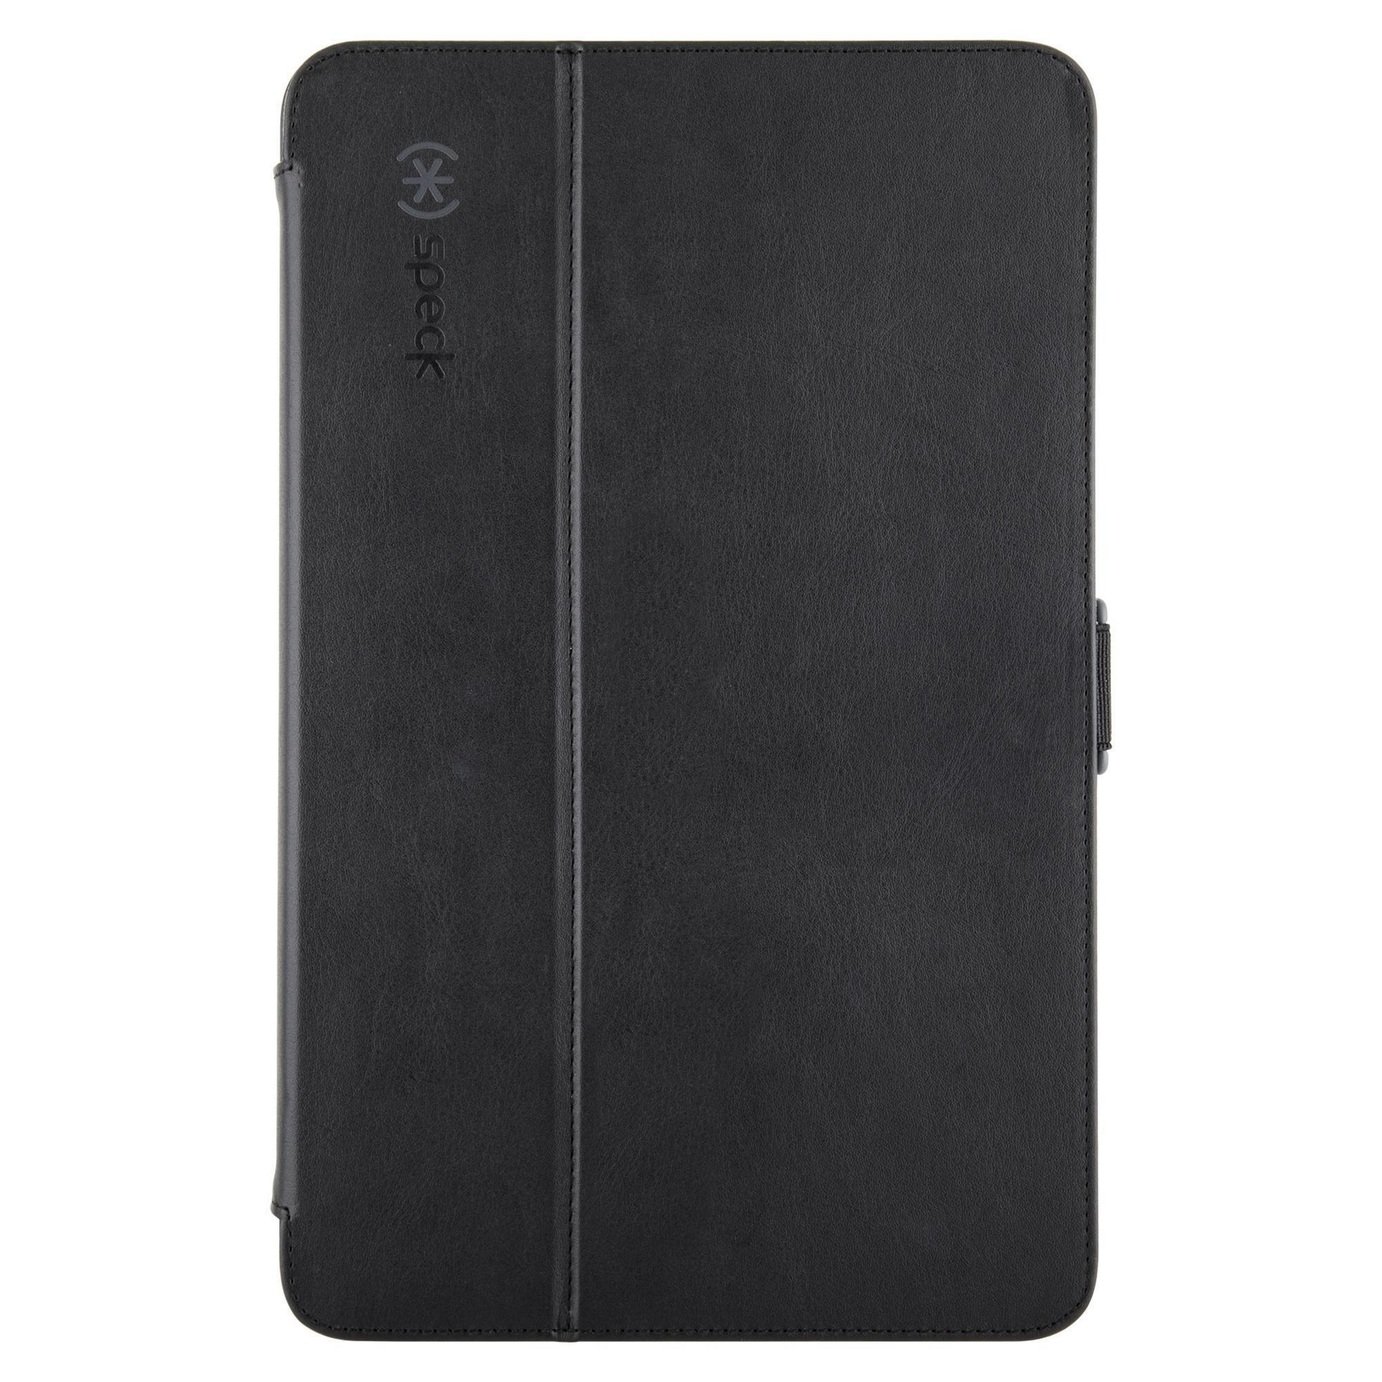 Speck Stylefolio Samsung Galaxy Tab A Tablet Case - Black